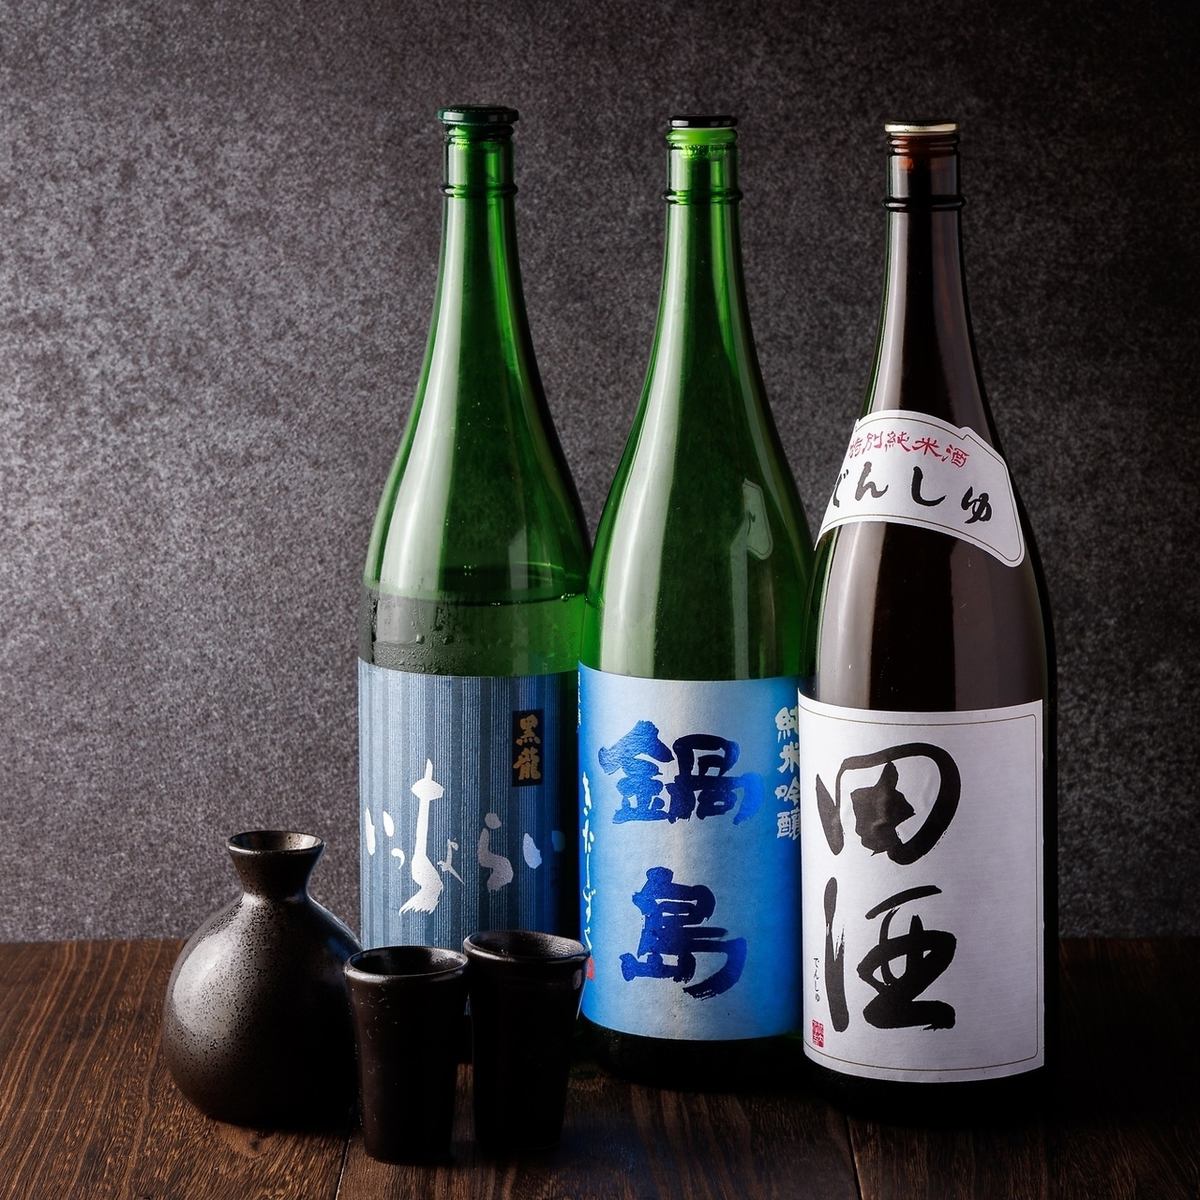 我們提供種類繁多的精選日本酒。